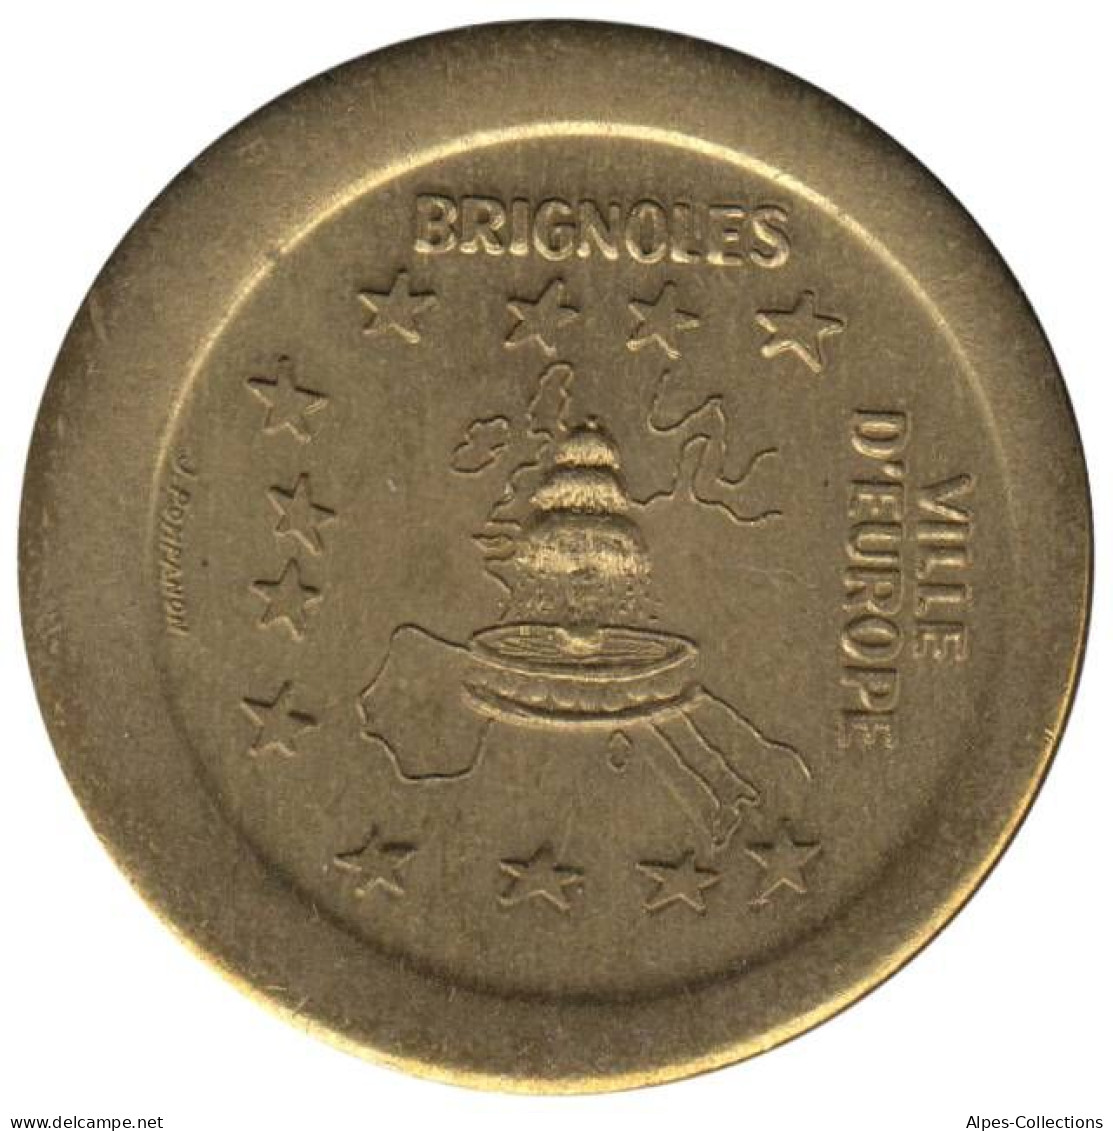 BRIGNOLE - EU0000.1 - EURO DES VILLES - Réf: NR - Uniface - Euros Of The Cities